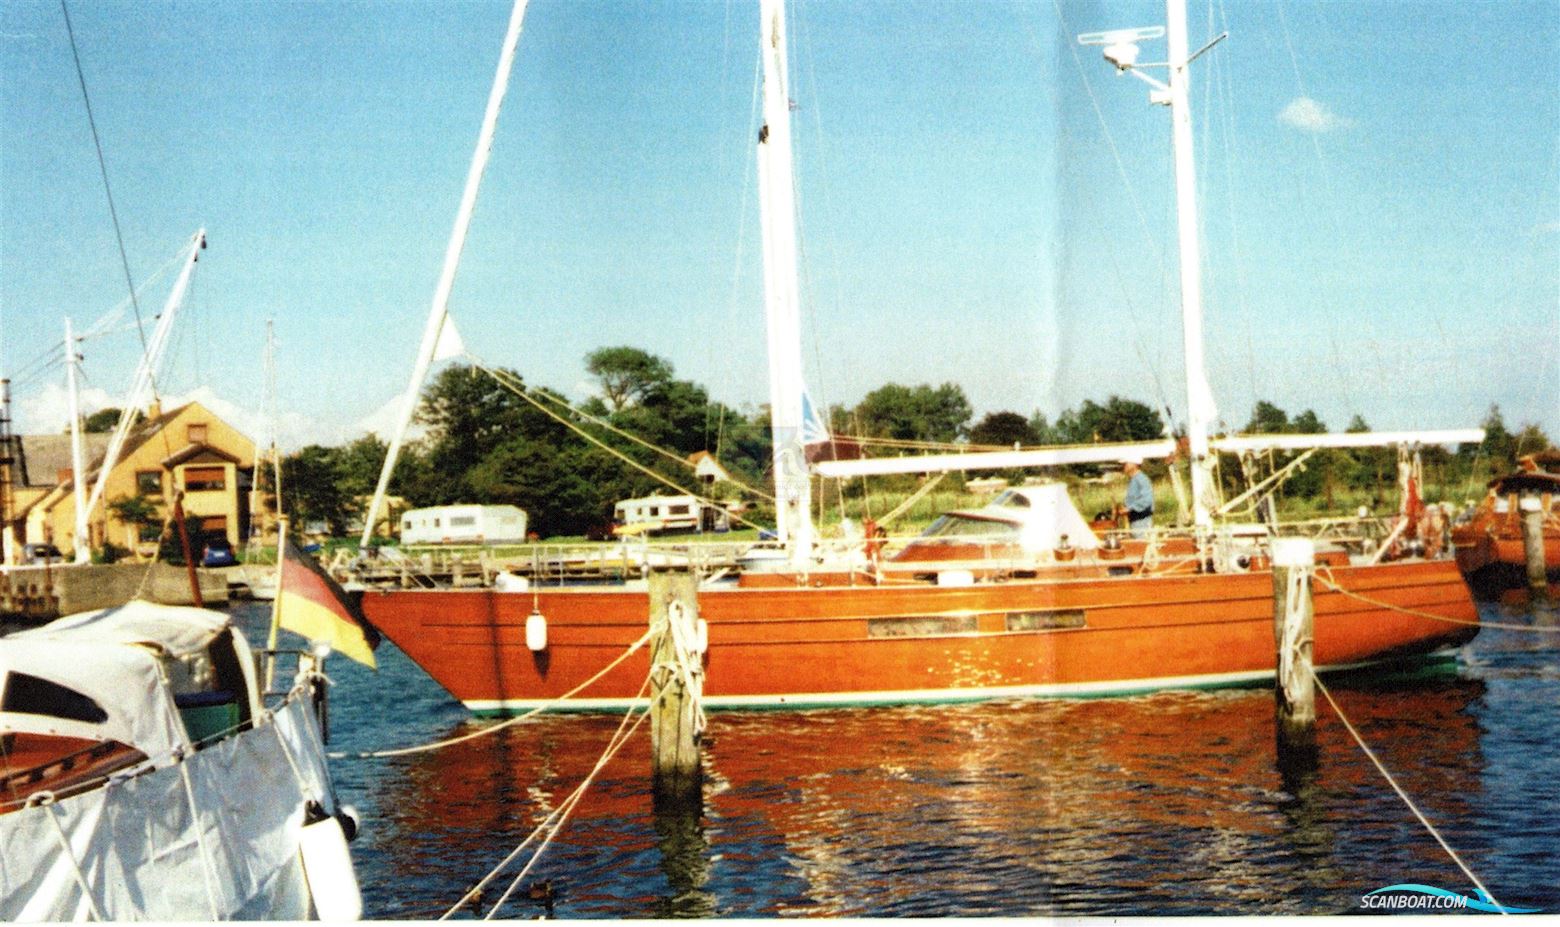 Matthiesen & Paulsen 14m Mahagoni Ketsch M&P Segelbåt 1985, med Mercedes OM617 motor, Tyskland